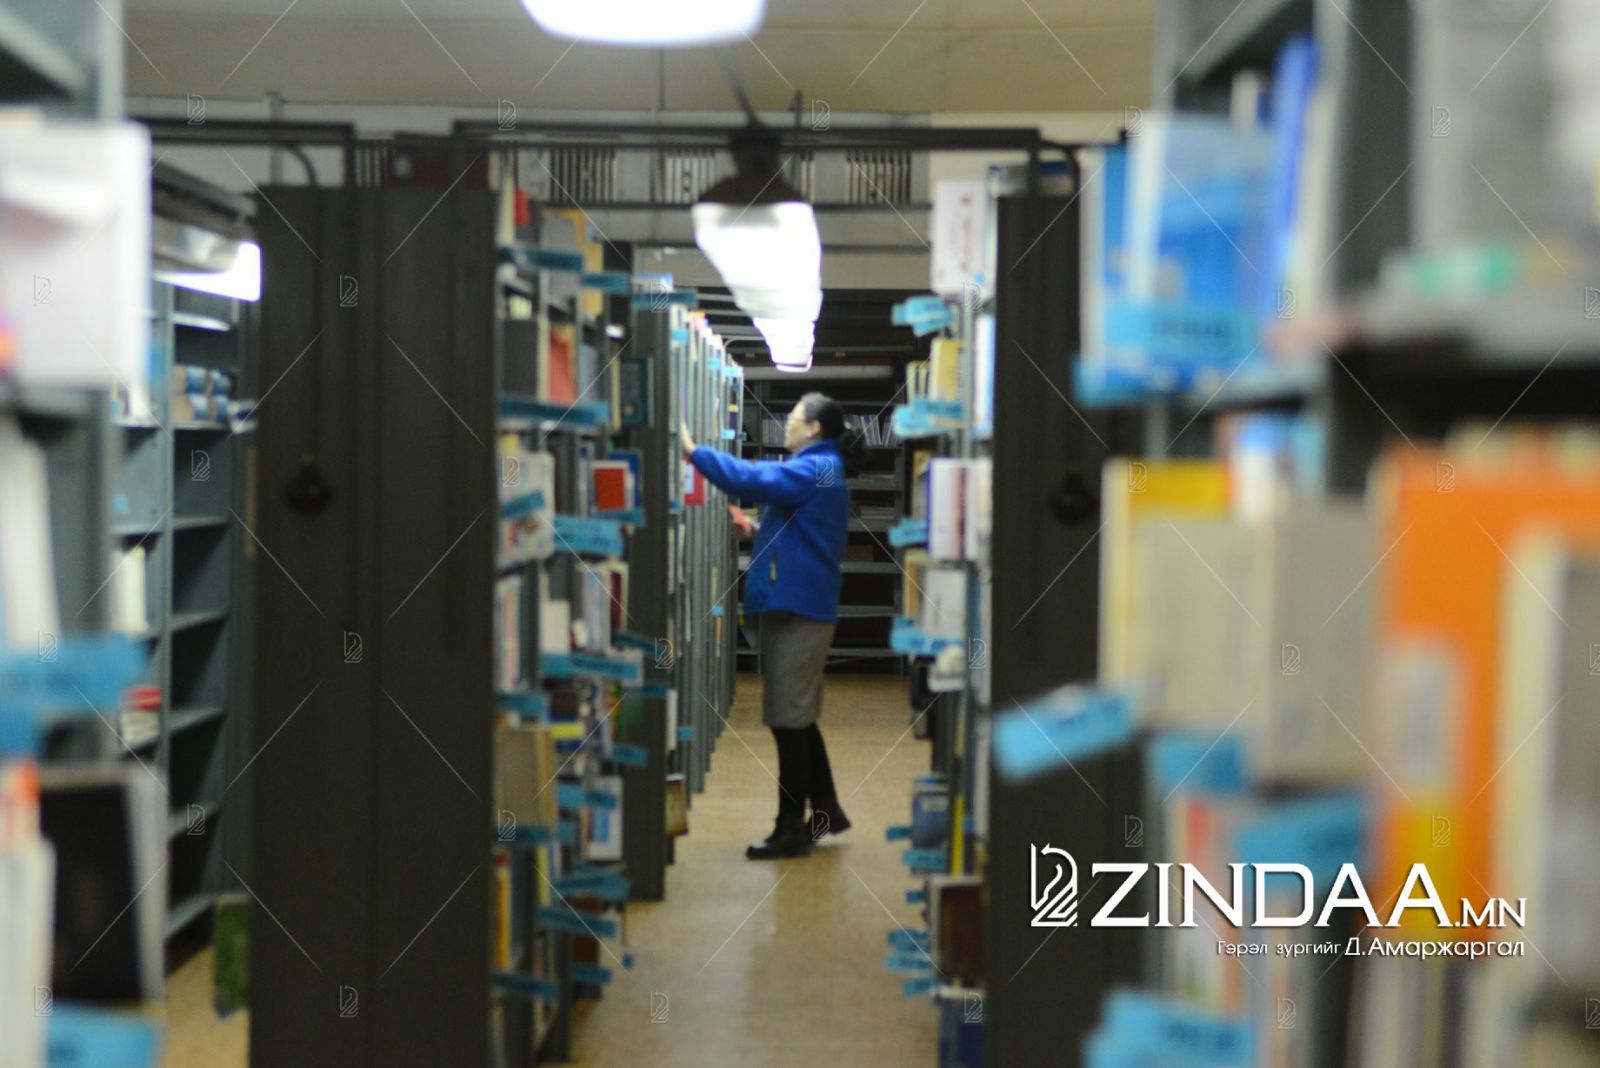 Монгол номын фонд нь 46 мянга гаруй номтой. Насанд хүрэгчдэд үйлчилдэг